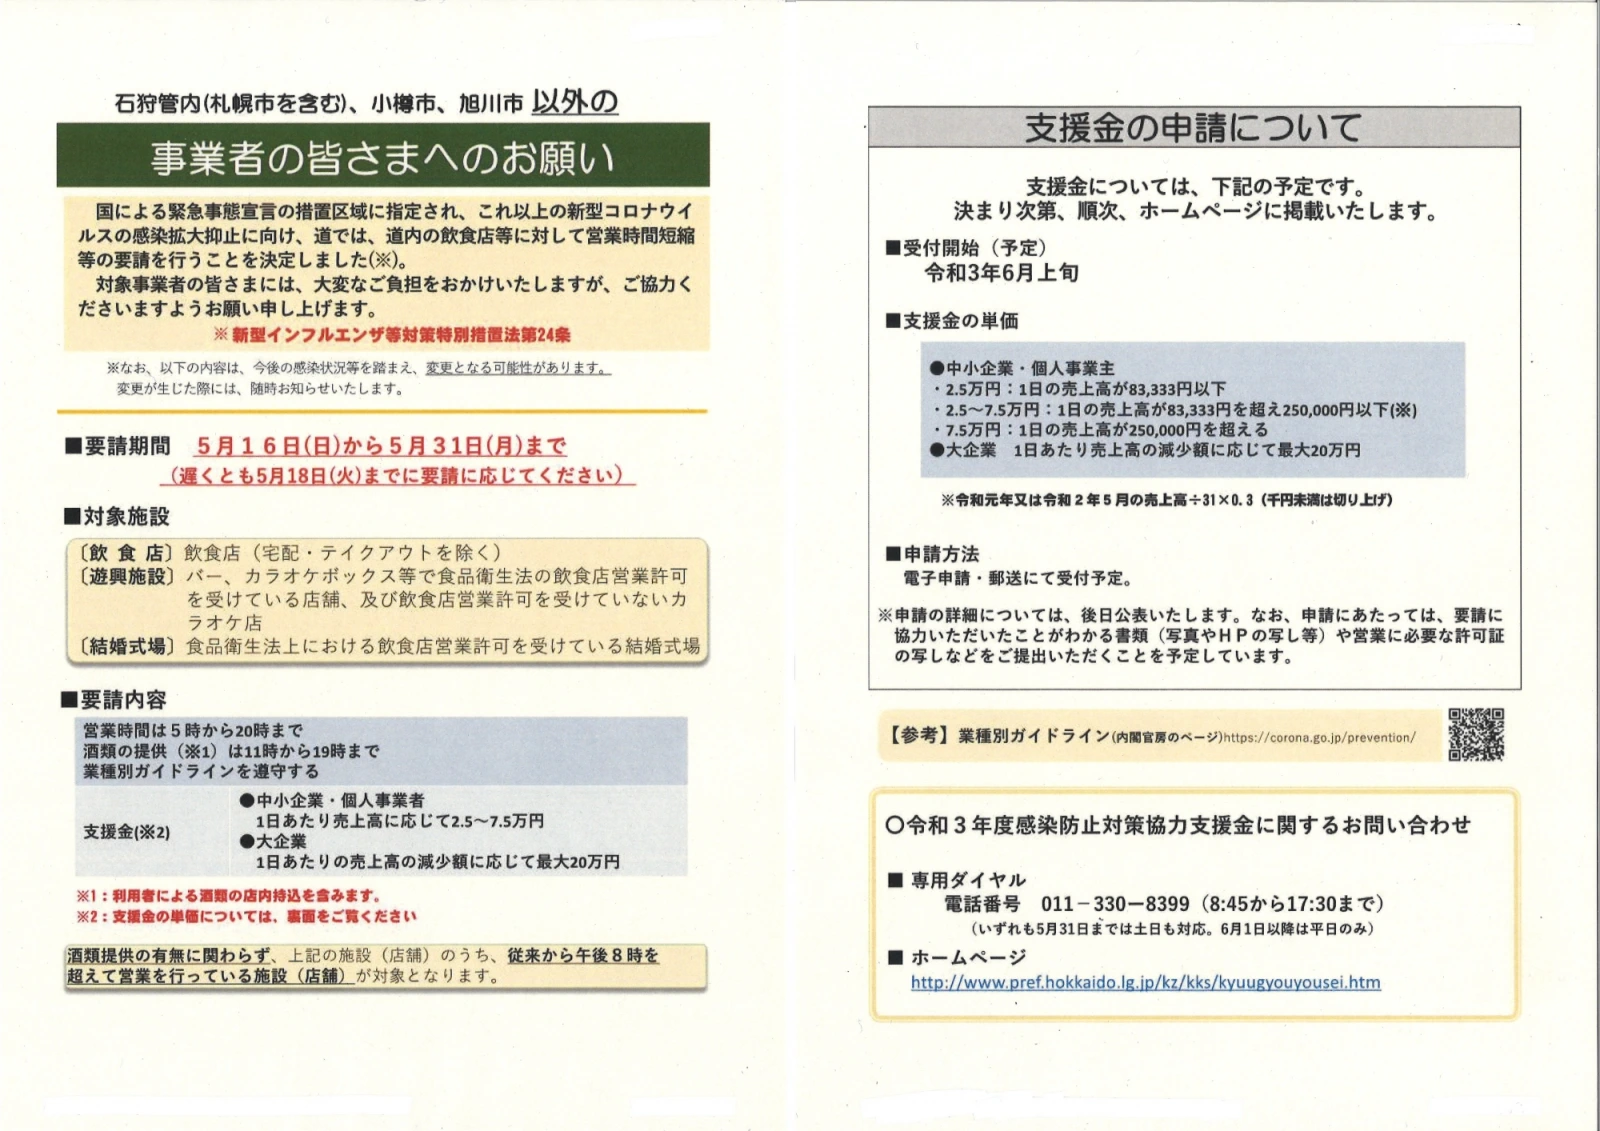 緊急事態措置における事業者の皆様への要請について｜北海道 上士幌町